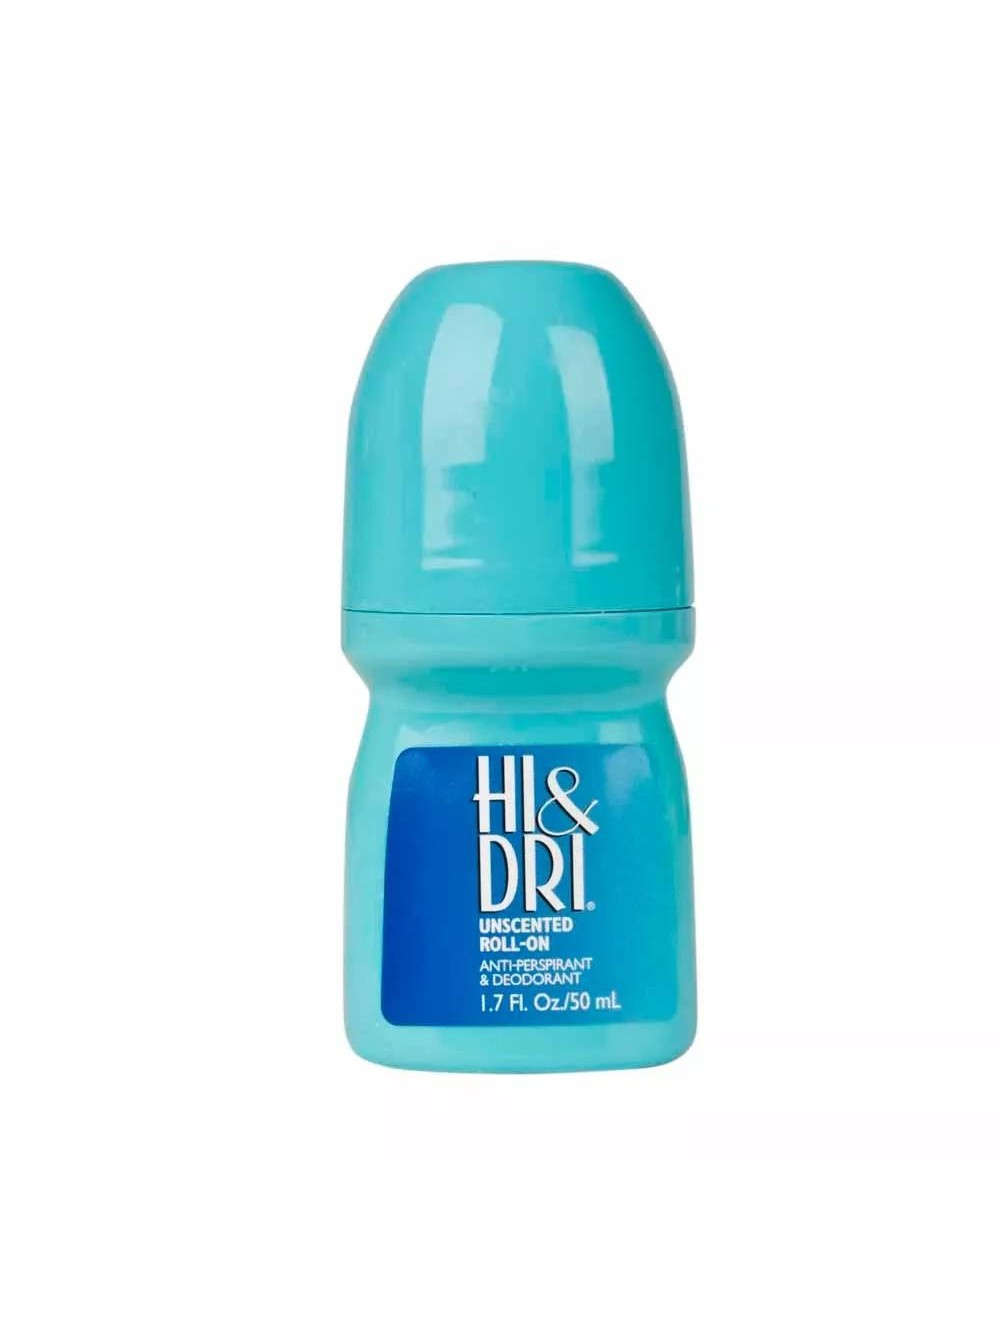 Desodorante Hi & Dri Unscented Roll-On 50ml - Marlene Beauty - Ampla gama  de perfumes importados e produtos de beleza